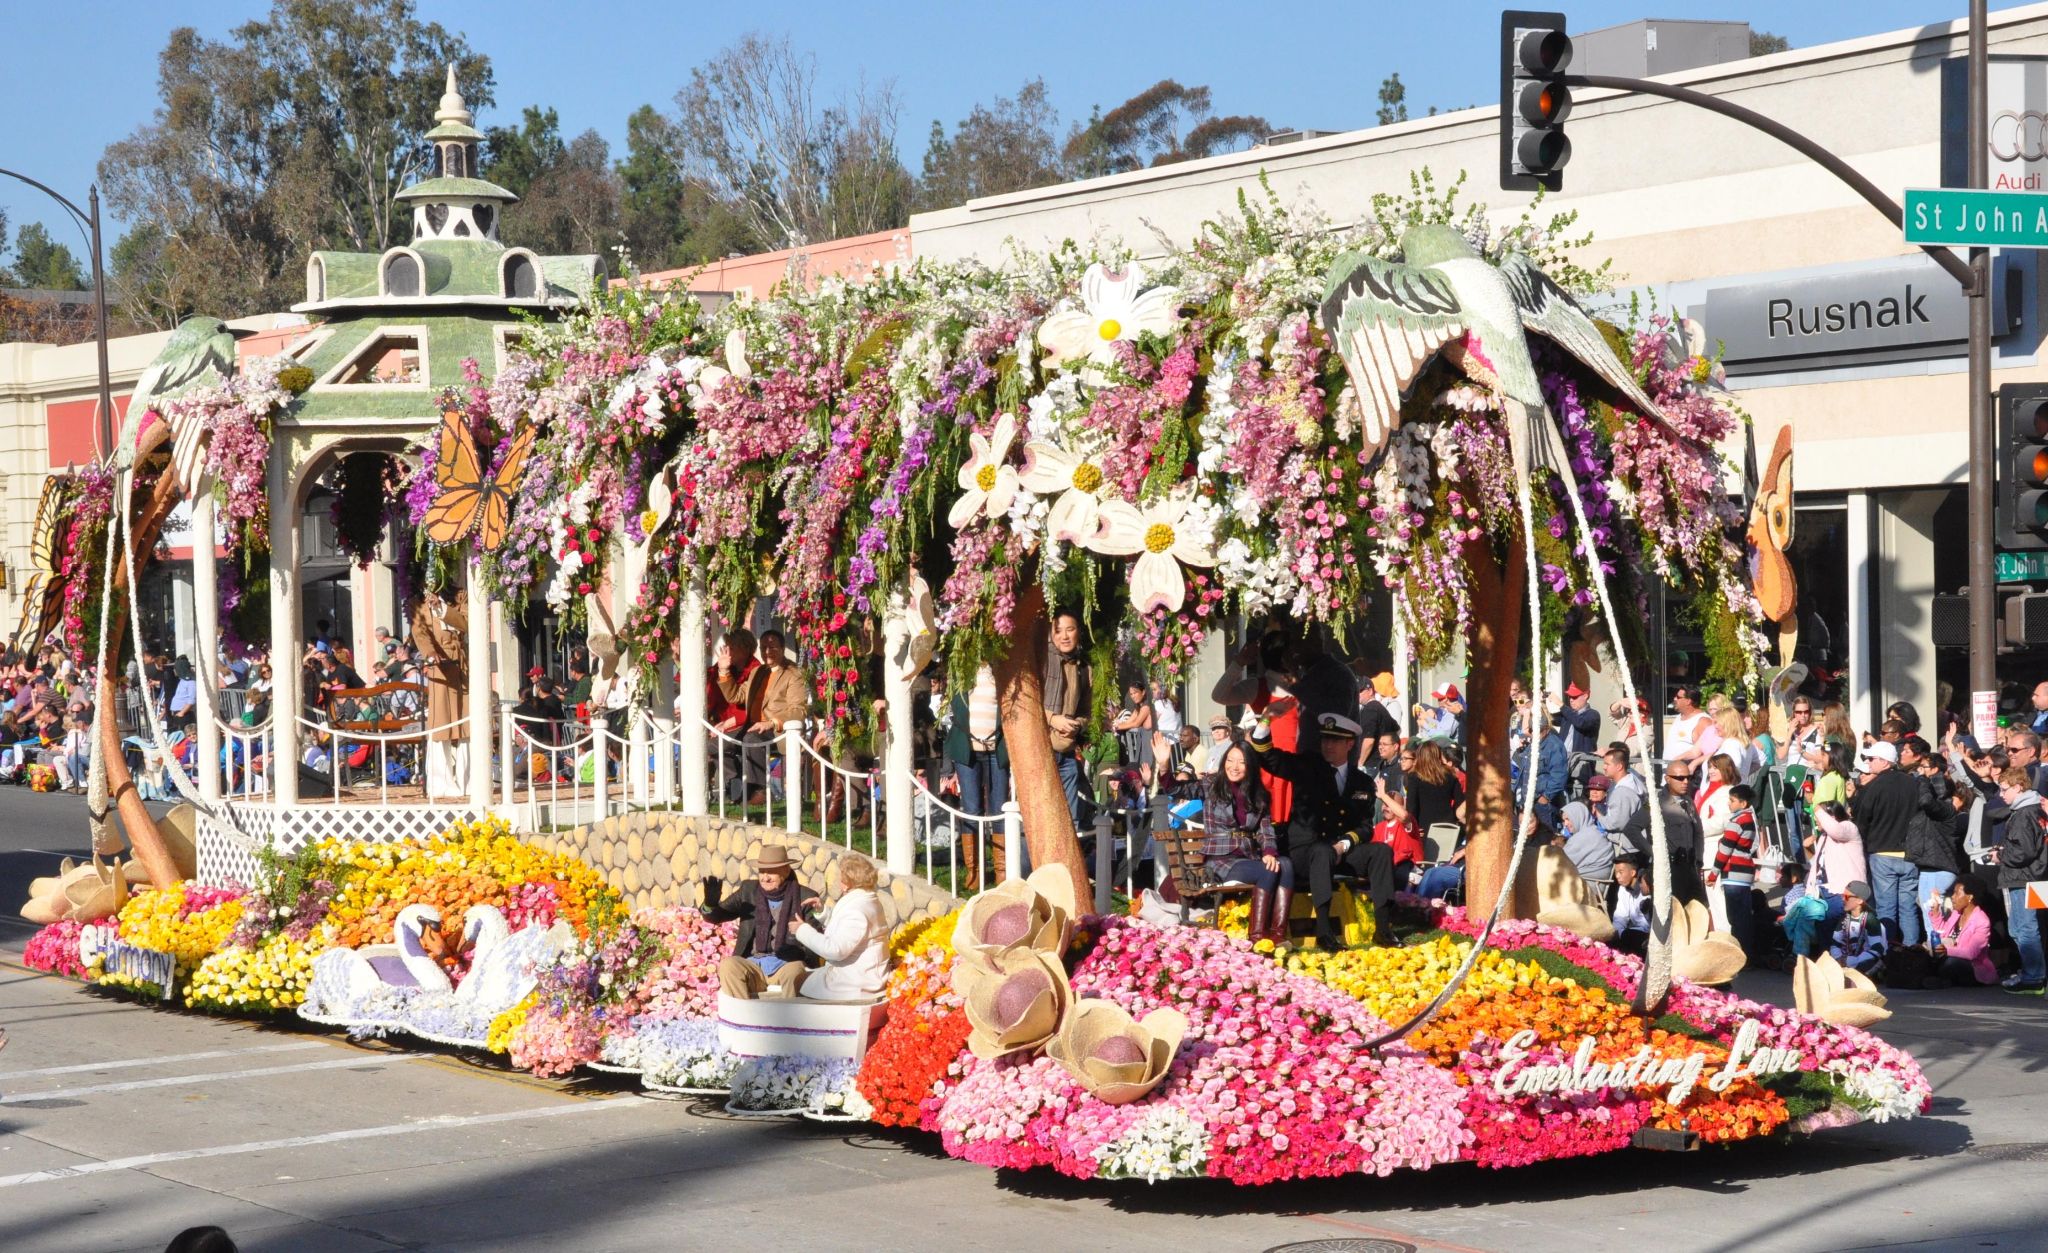 eHarmony (a), Tournament of Roses Parade, Pasadena, CA - 2014-01-01